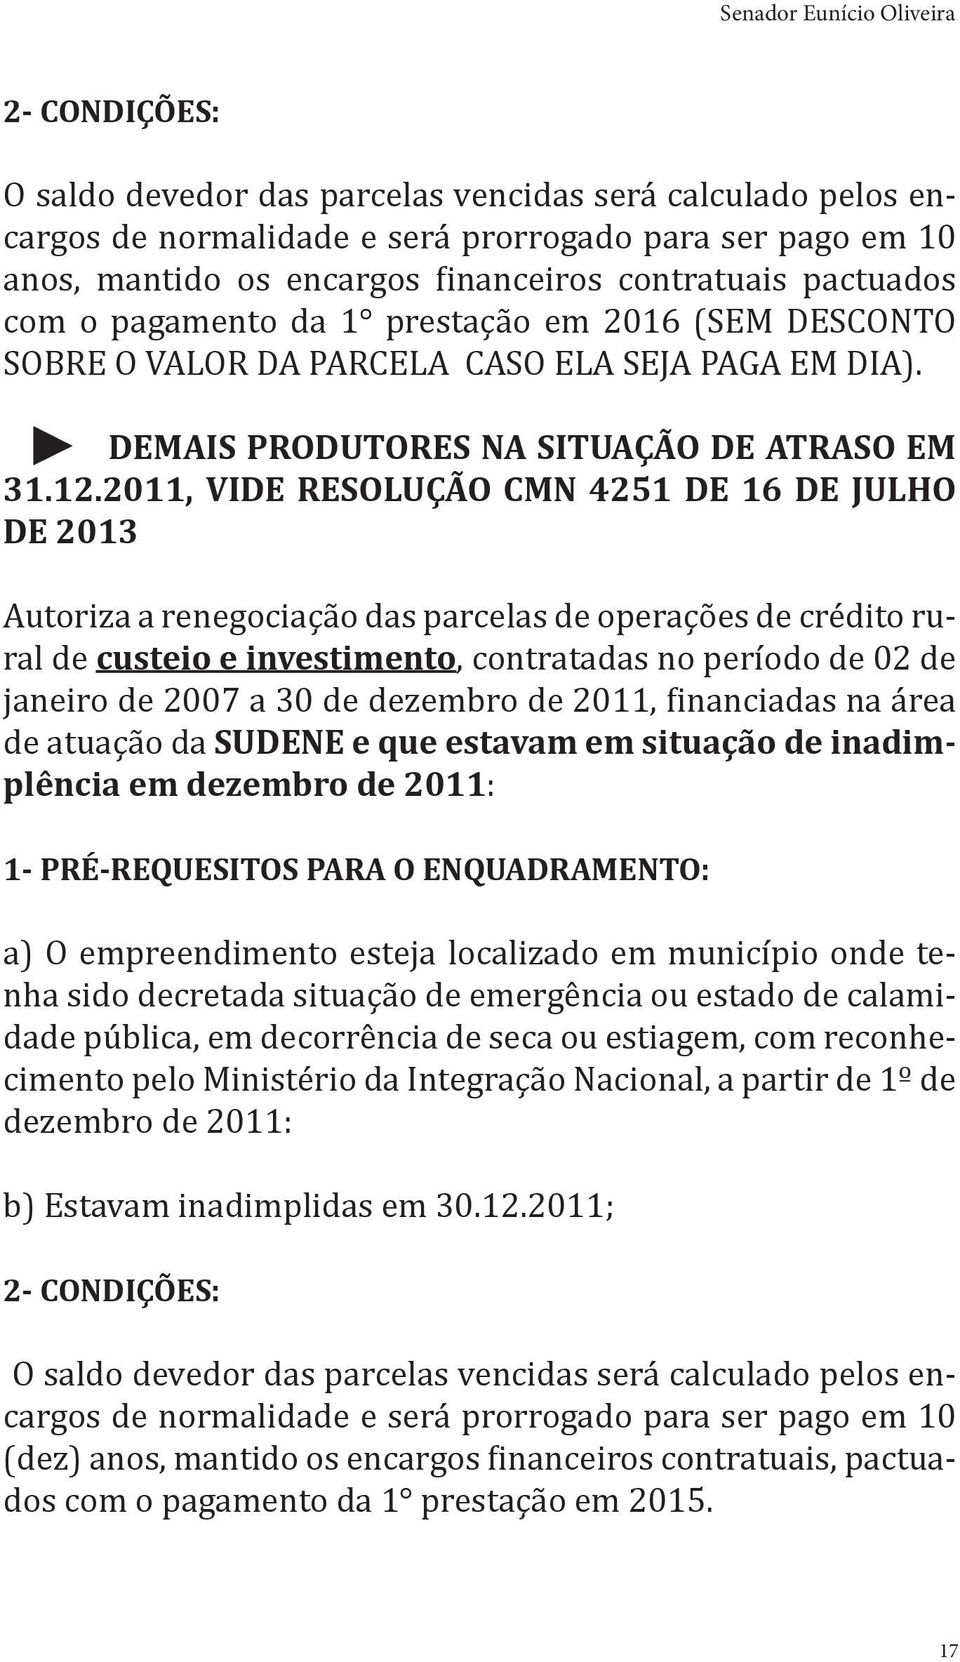 2011, VIDE RESOLUÇÃO CMN 4251 DE 16 DE JULHO DE 2013 Autoriza a renegociação das parcelas de operações de crédito rural de custeio e investimento, contratadas no período de 02 de janeiro de 2007 a 30